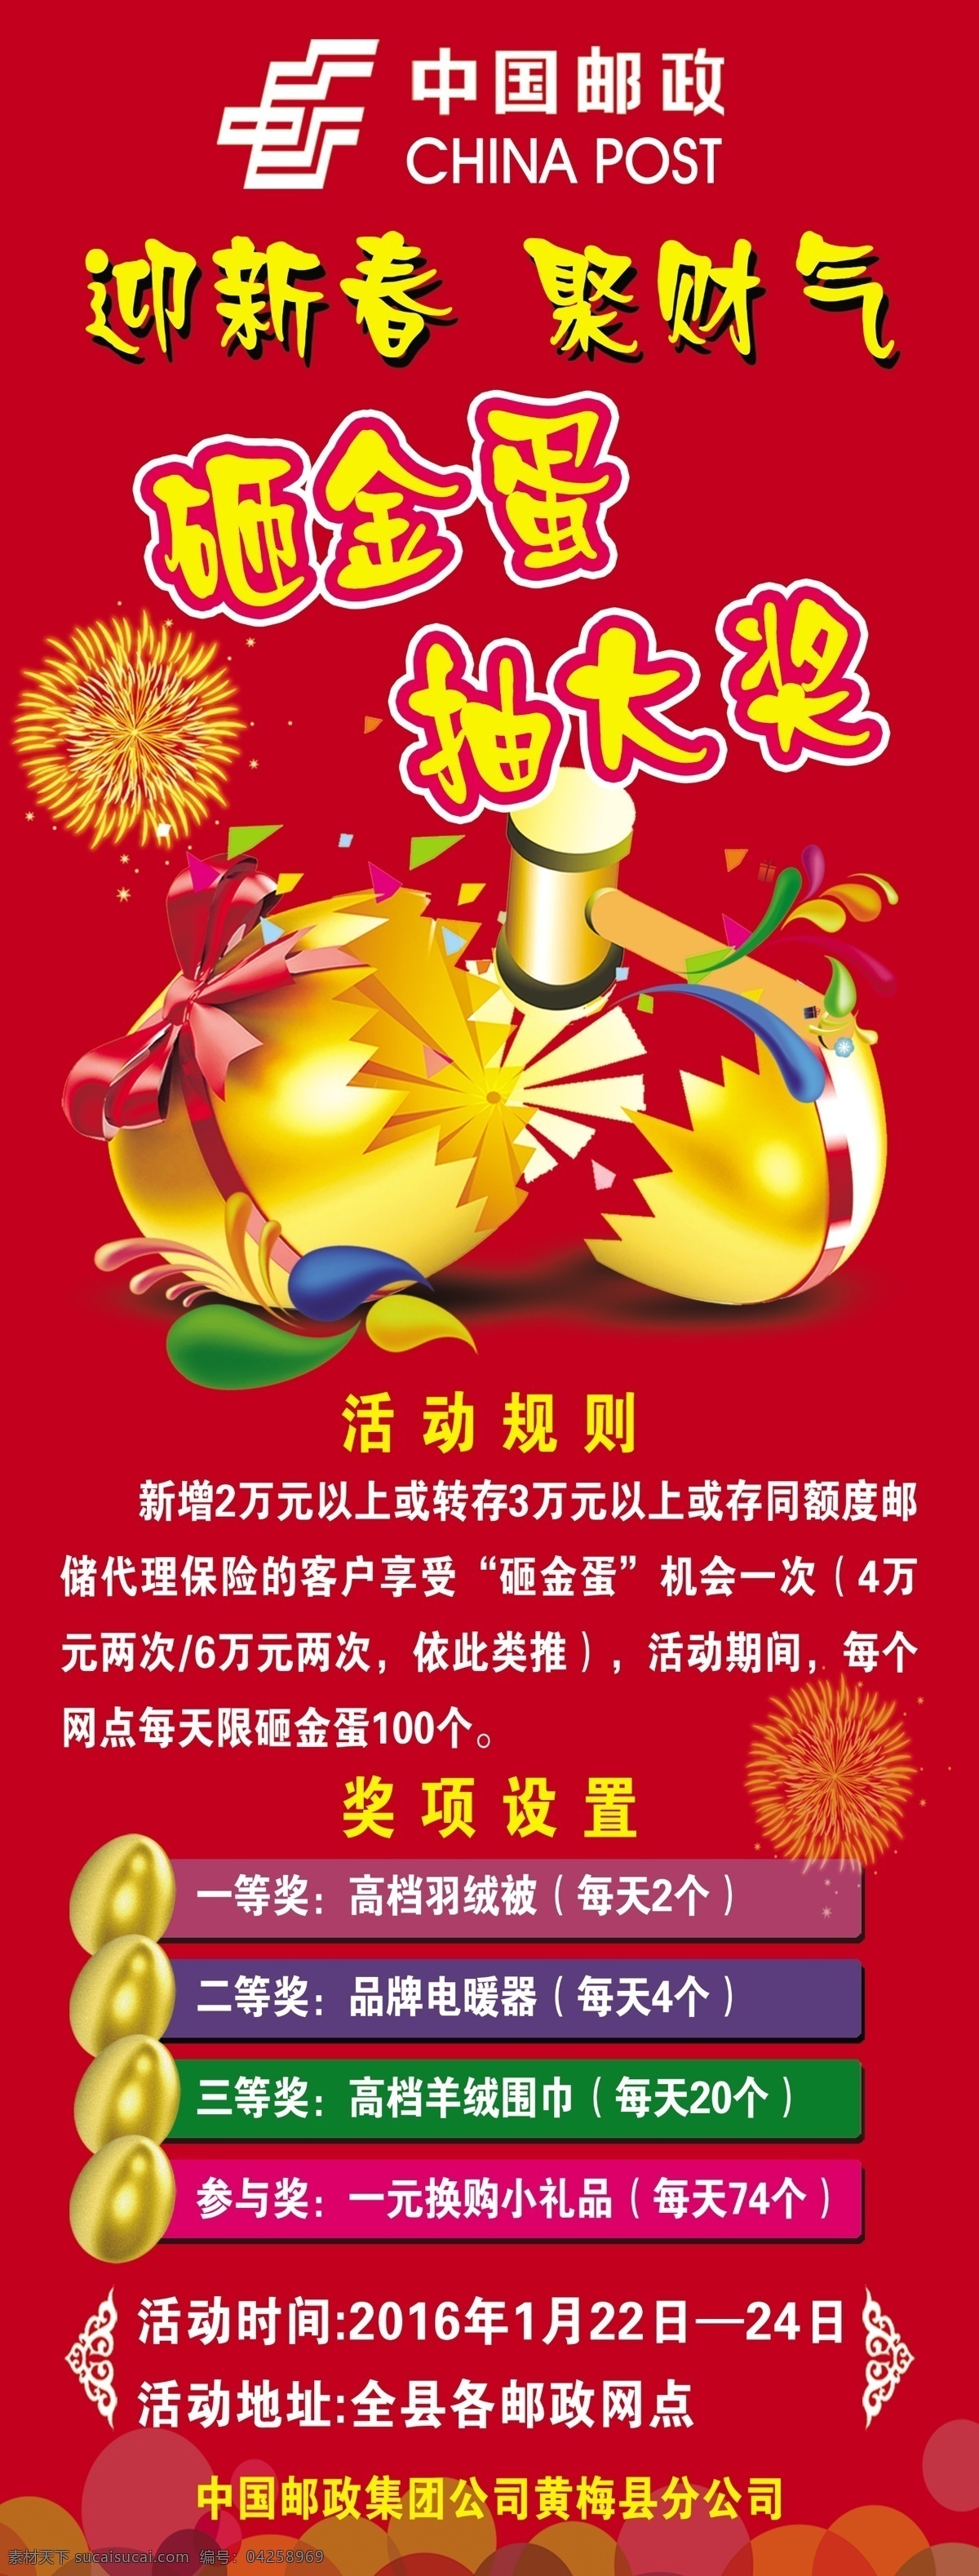 中国 邮政 活动 展架 中国邮政 邮政海报 砸金蛋 抽大奖 邮政展架 展板模板